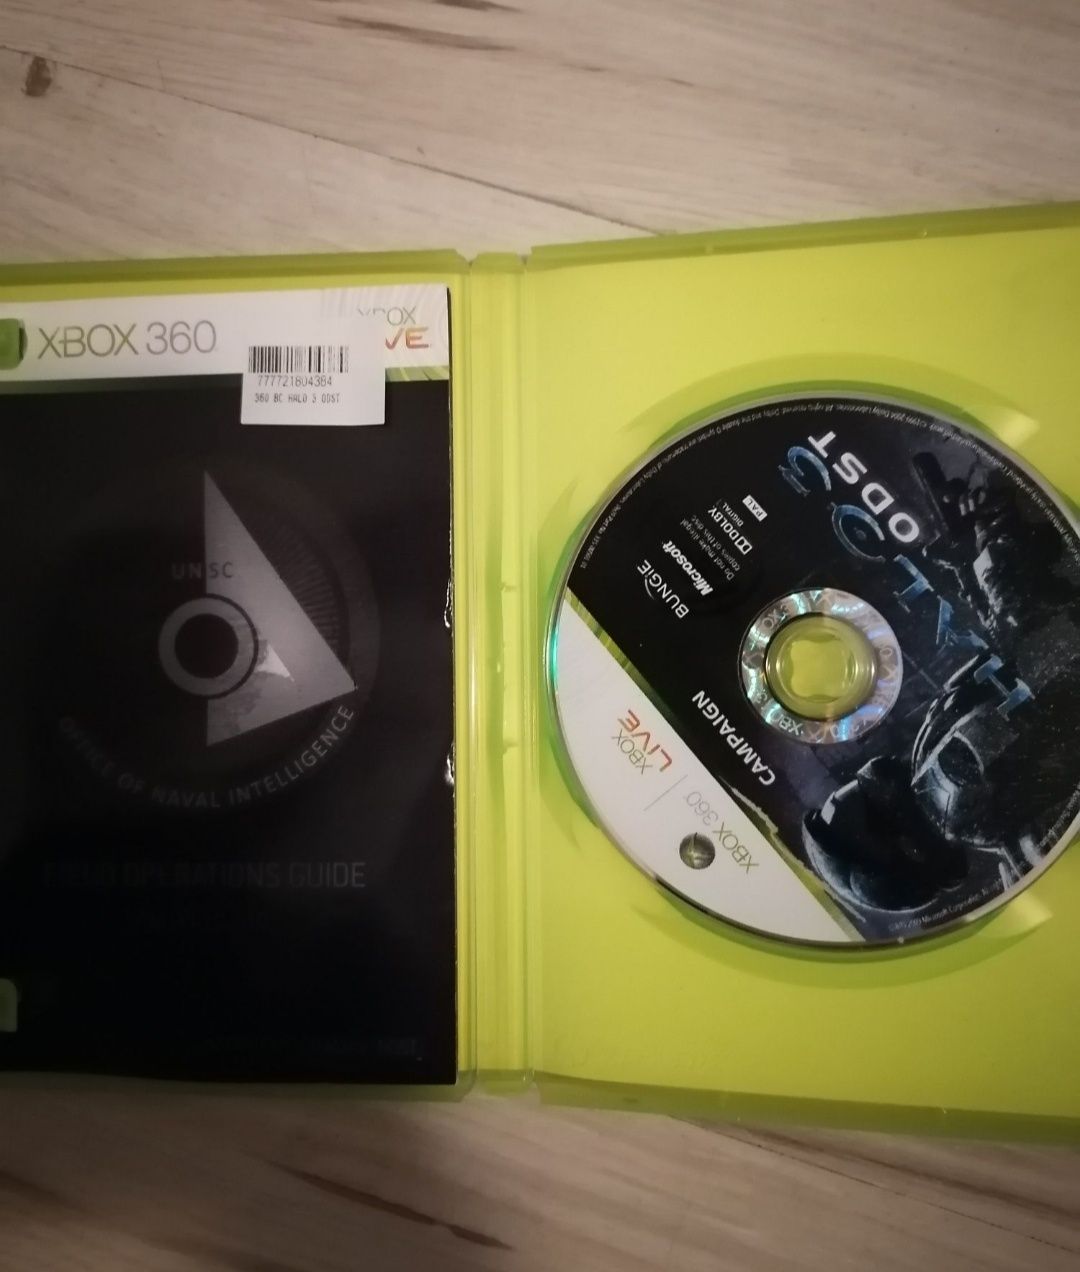 Halo 3 odst stan idealny Xbox 360